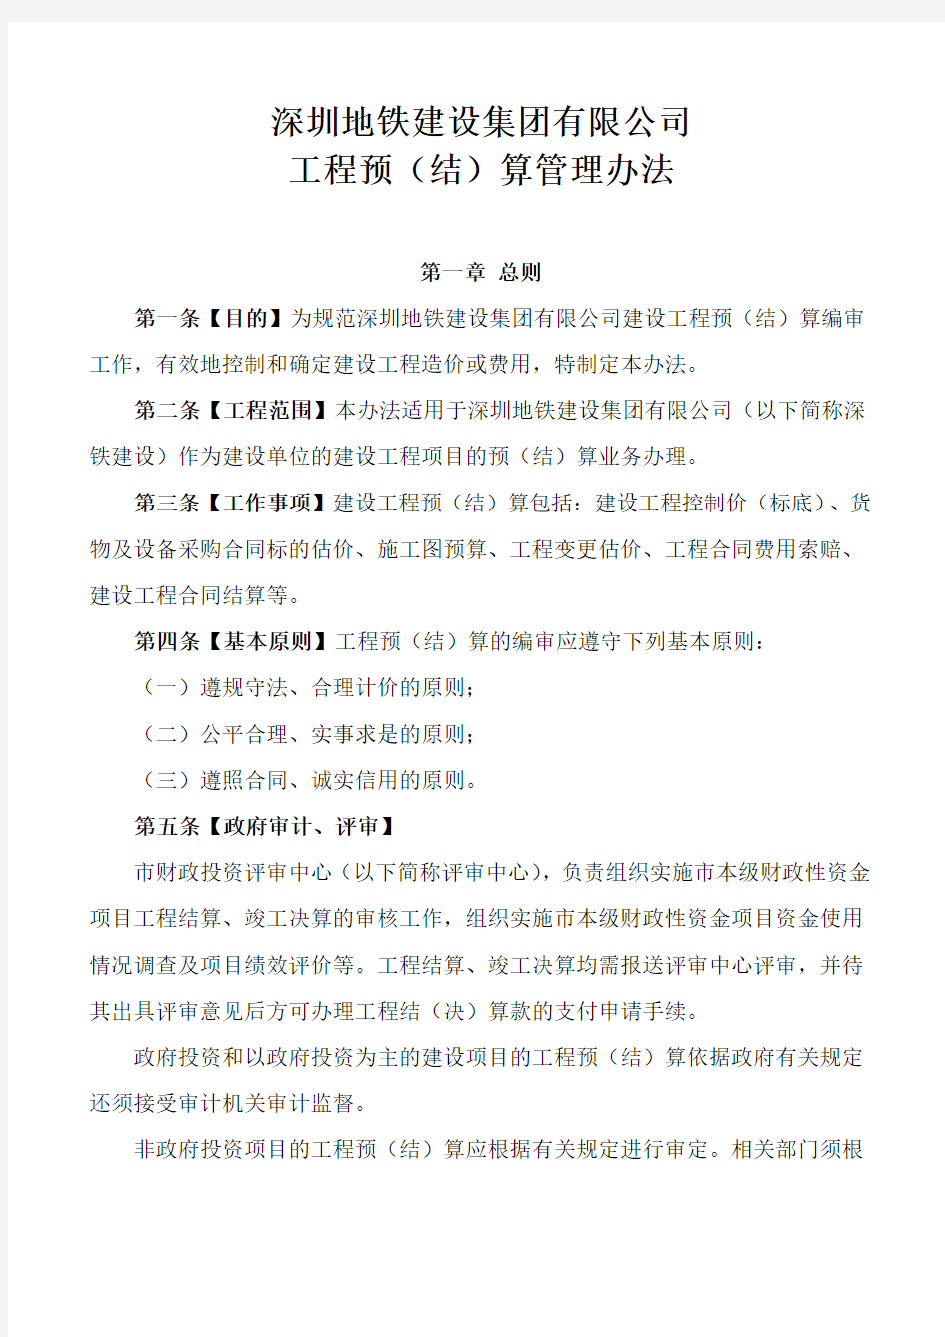 深圳地铁建设集团有限公司工程预(结)算管理办法201907